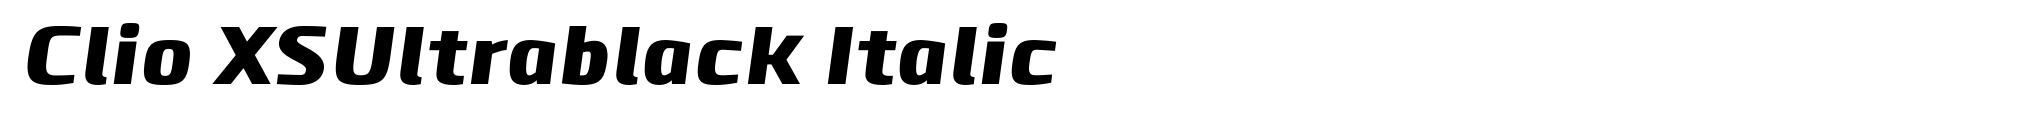 Clio XSUltrablack Italic image